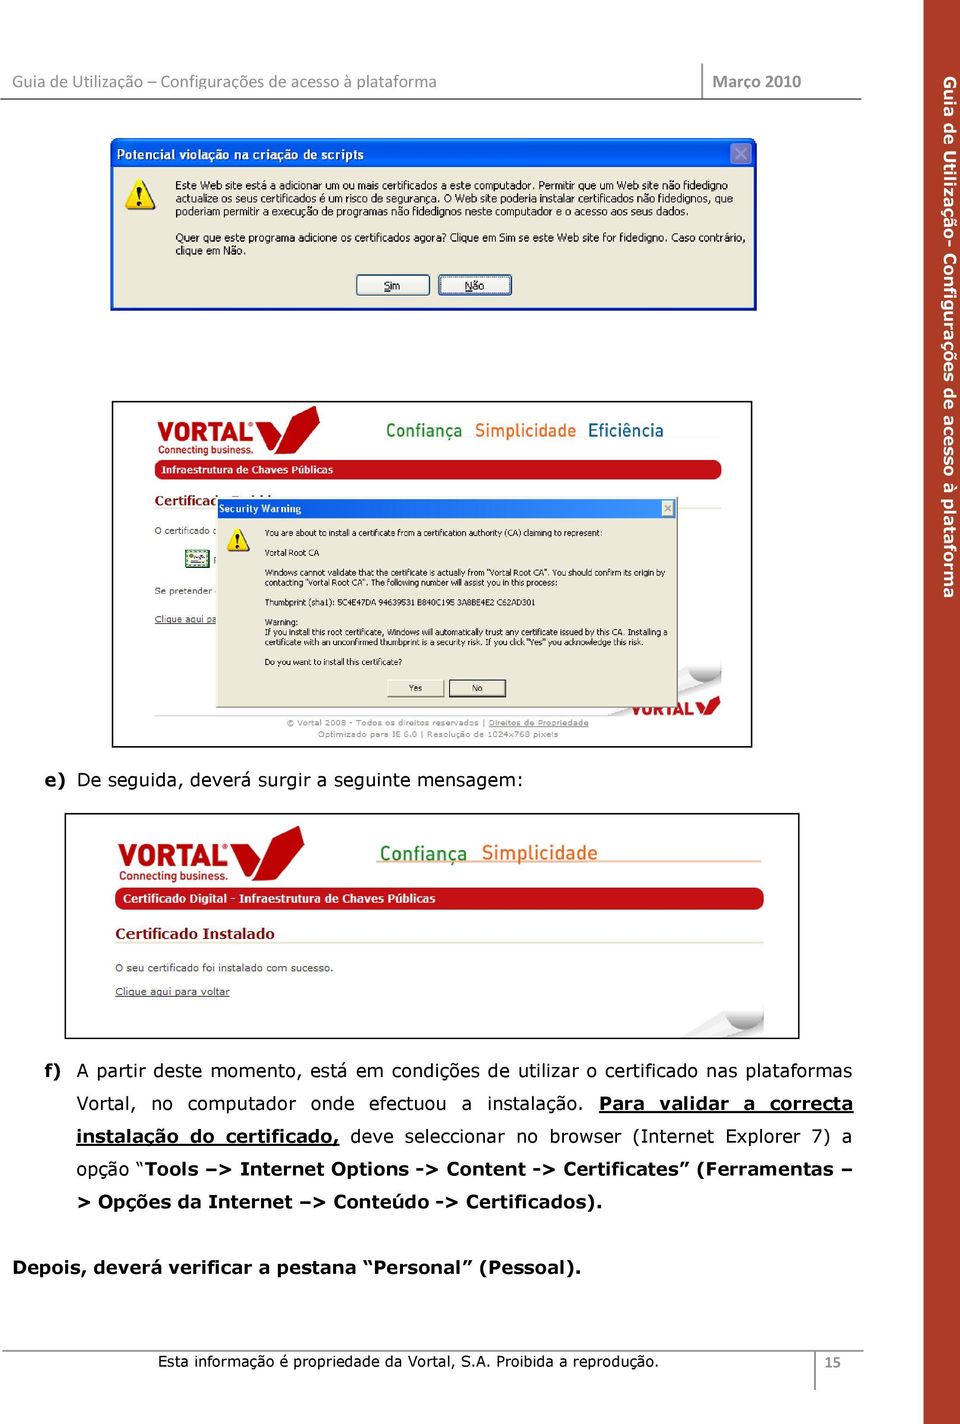 Para validar a correcta instalação do certificado, deve seleccionar no browser (Internet Explorer 7) a opção Tools > Internet Options